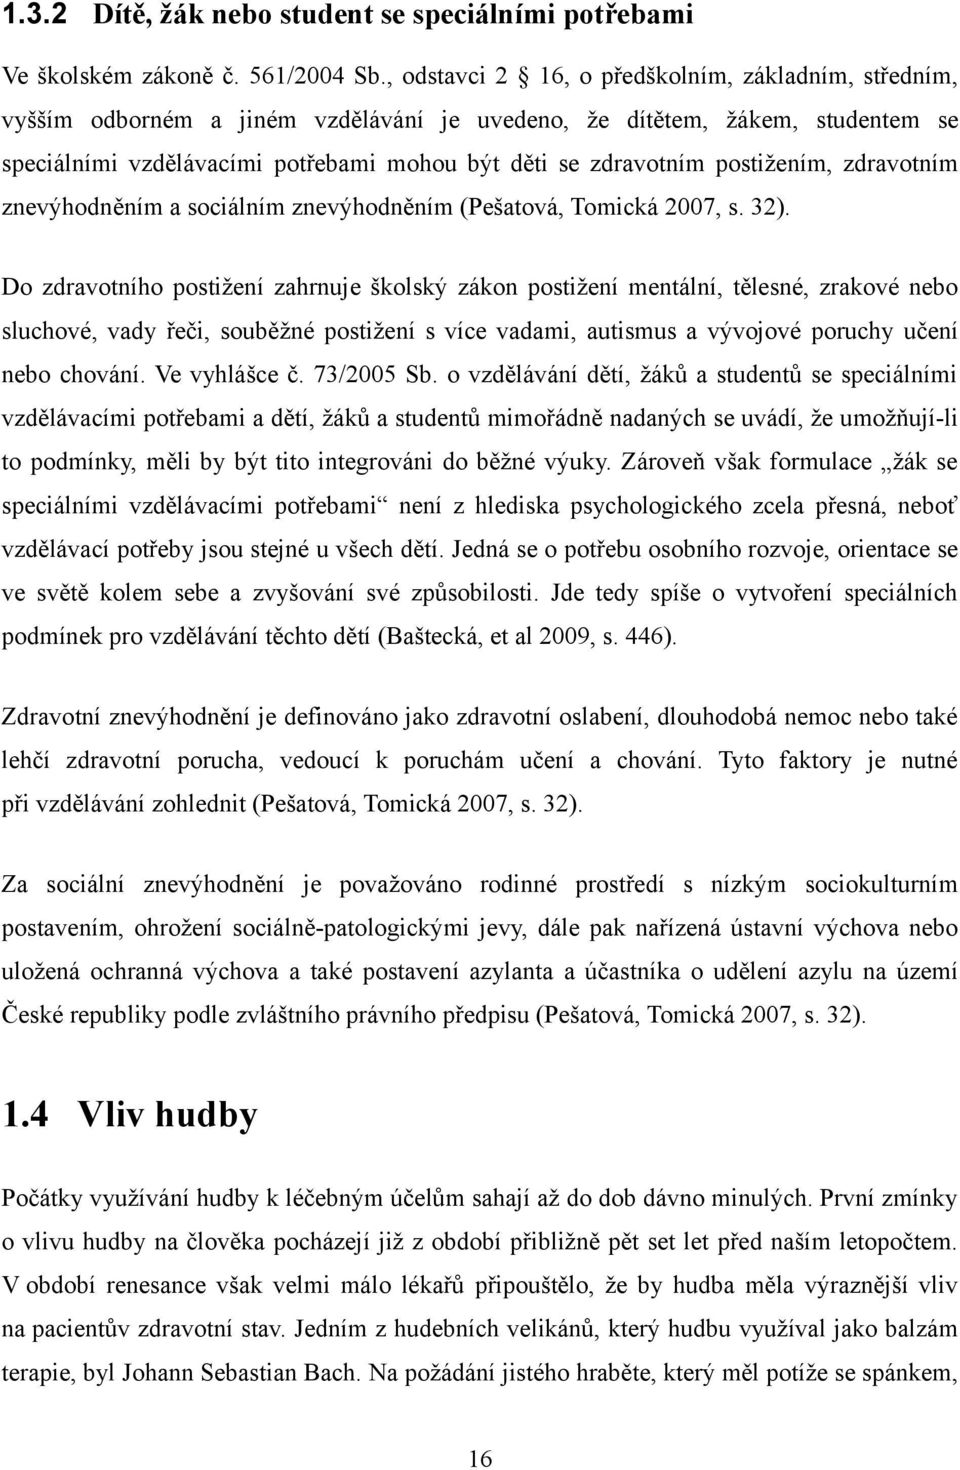 postižením, zdravotním znevýhodněním a sociálním znevýhodněním (Pešatová, Tomická 2007, s. 32).